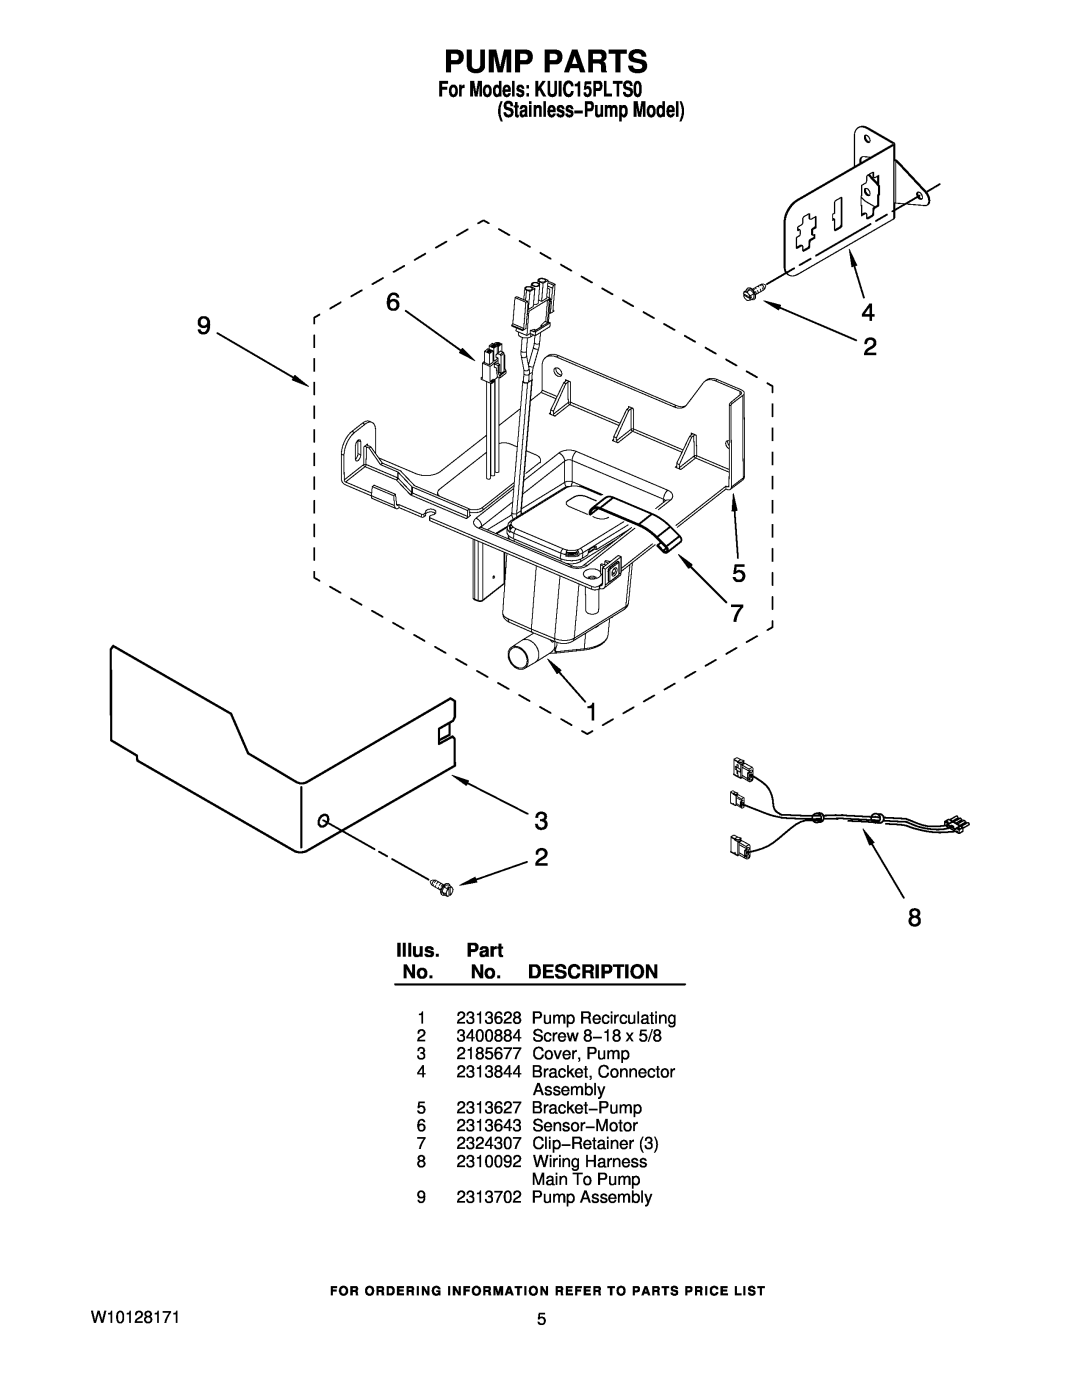 KitchenAid manual Pump Parts, Illus. Part No. No. DESCRIPTION, For Models KUIC15PLTS0 Stainless−Pump Model 